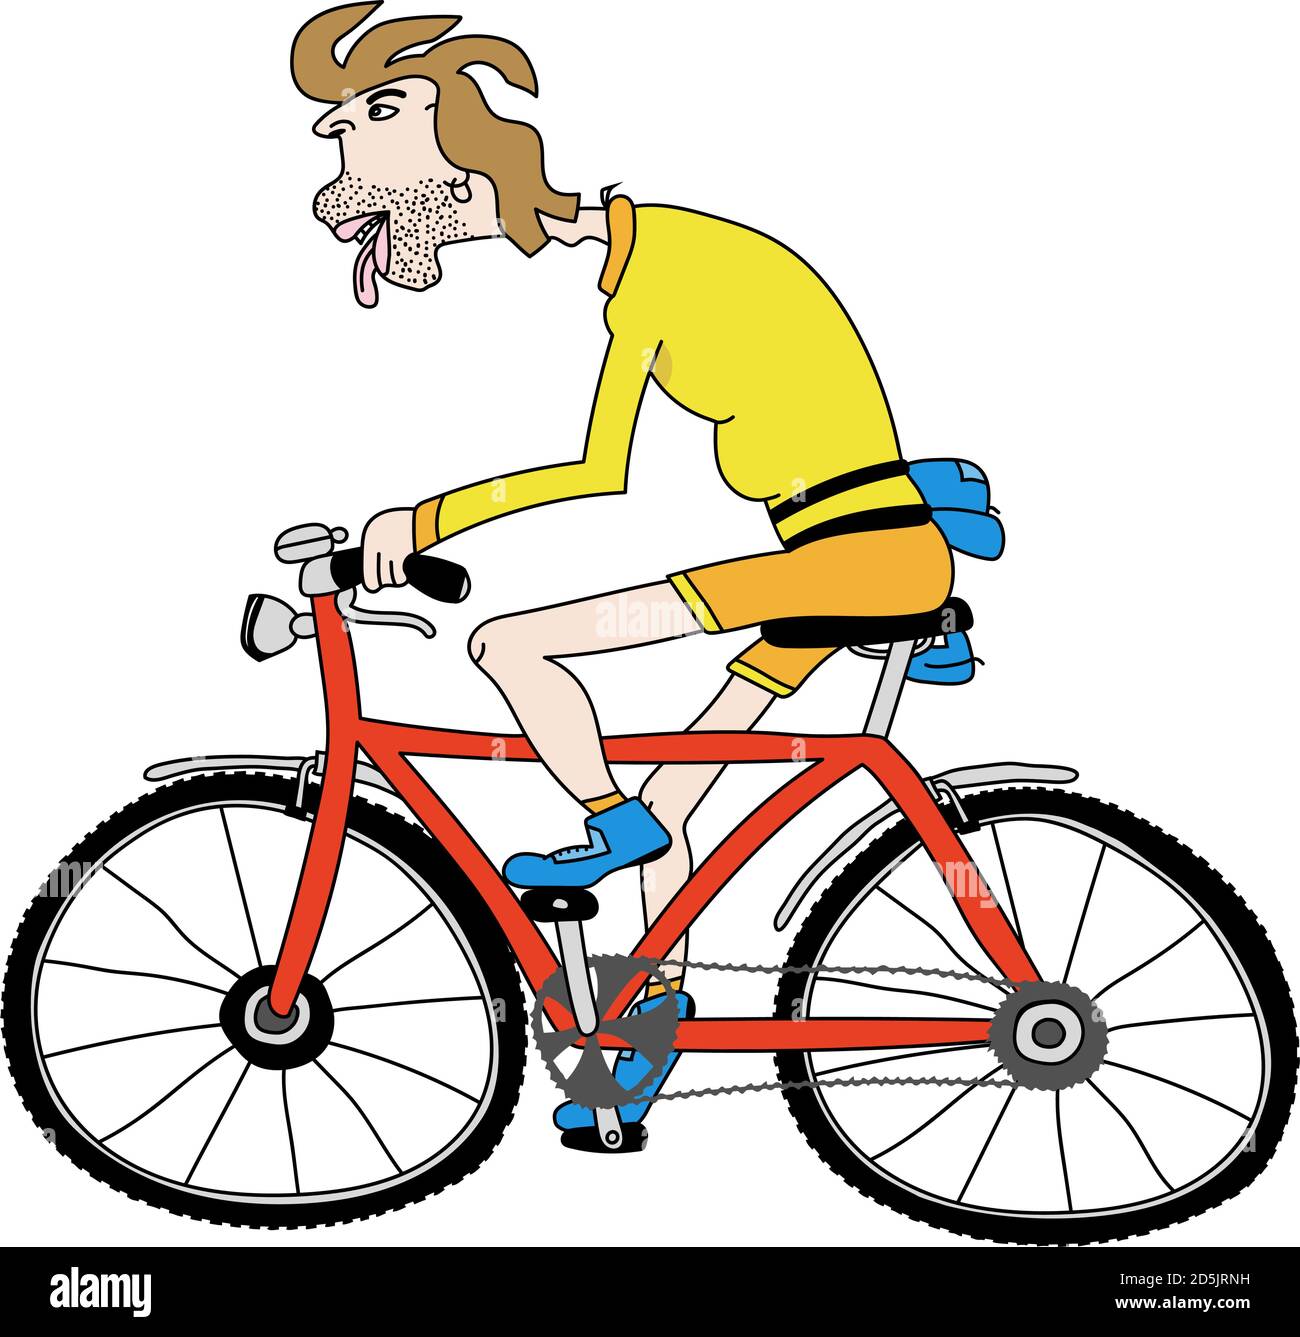 Ilustración de dibujos animados vectoriales editables de un hombre en bicicleta Ilustración del Vector